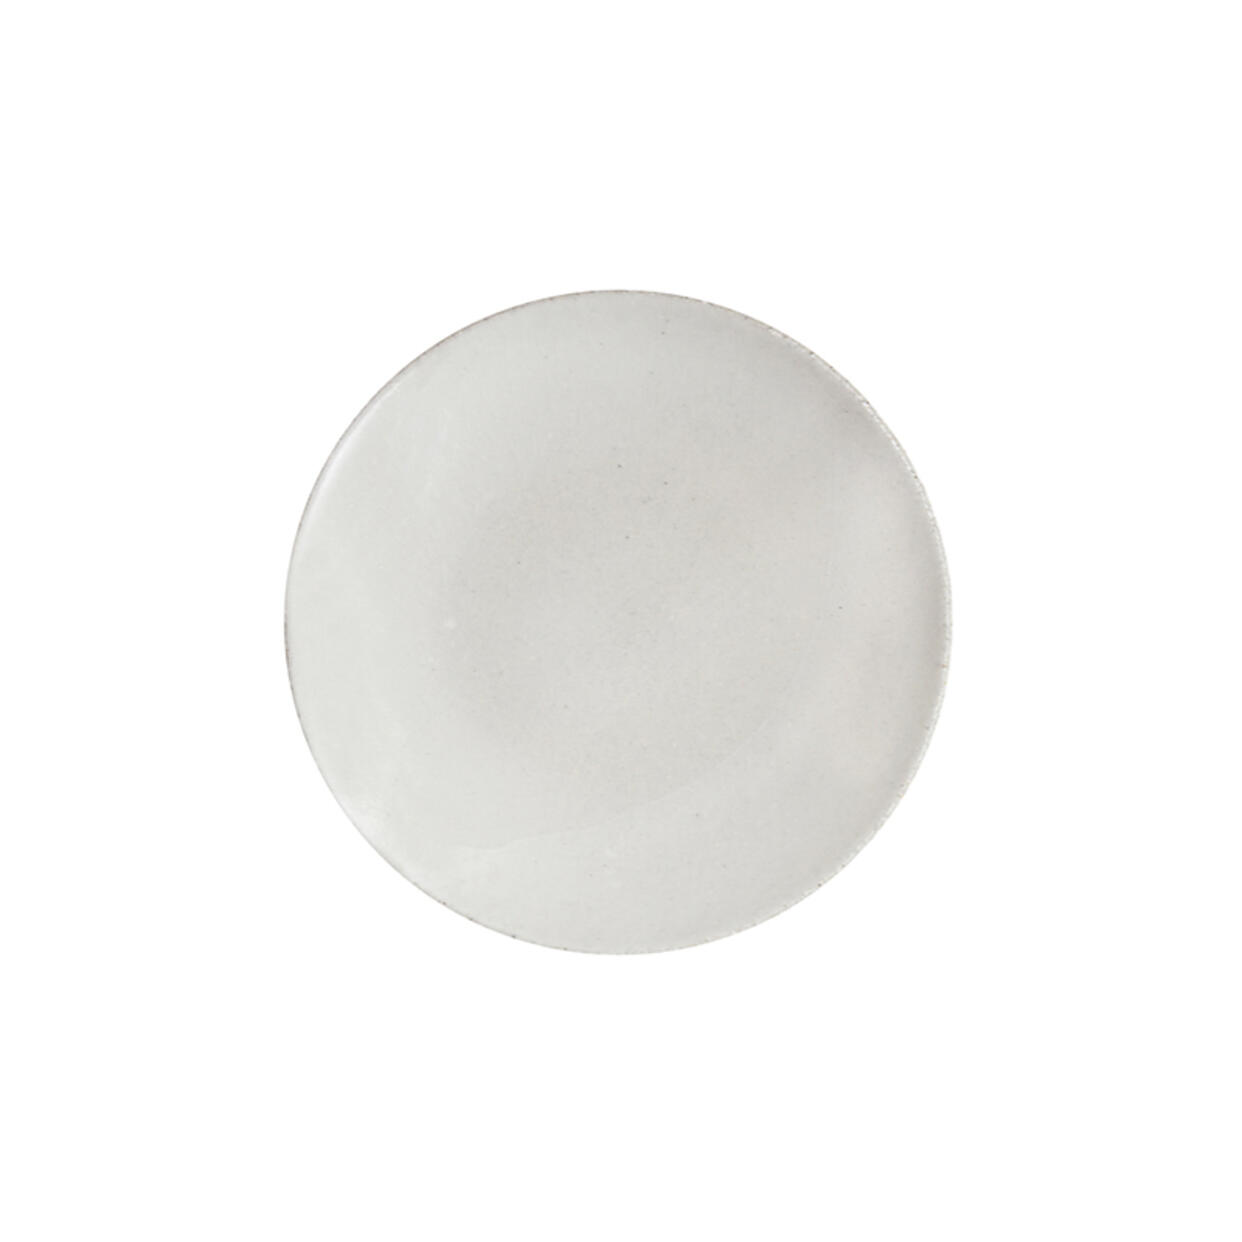 Dessert ronde Wabi blanc céramique haut de gamme